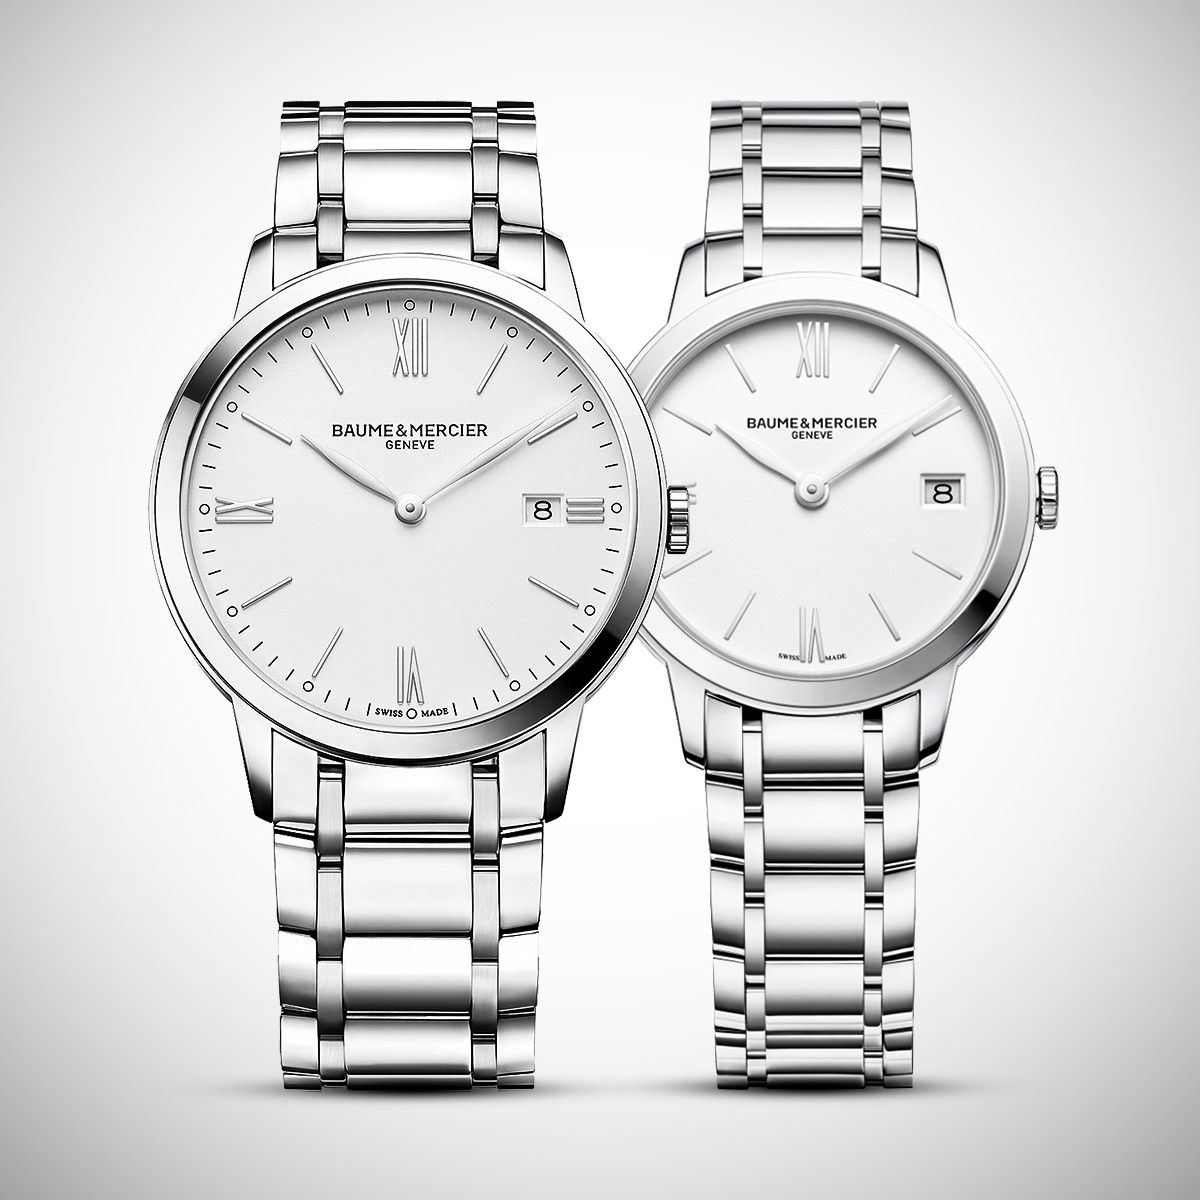 Đồng hồ cặp đôi My Classima đến từ Baume & Mercier